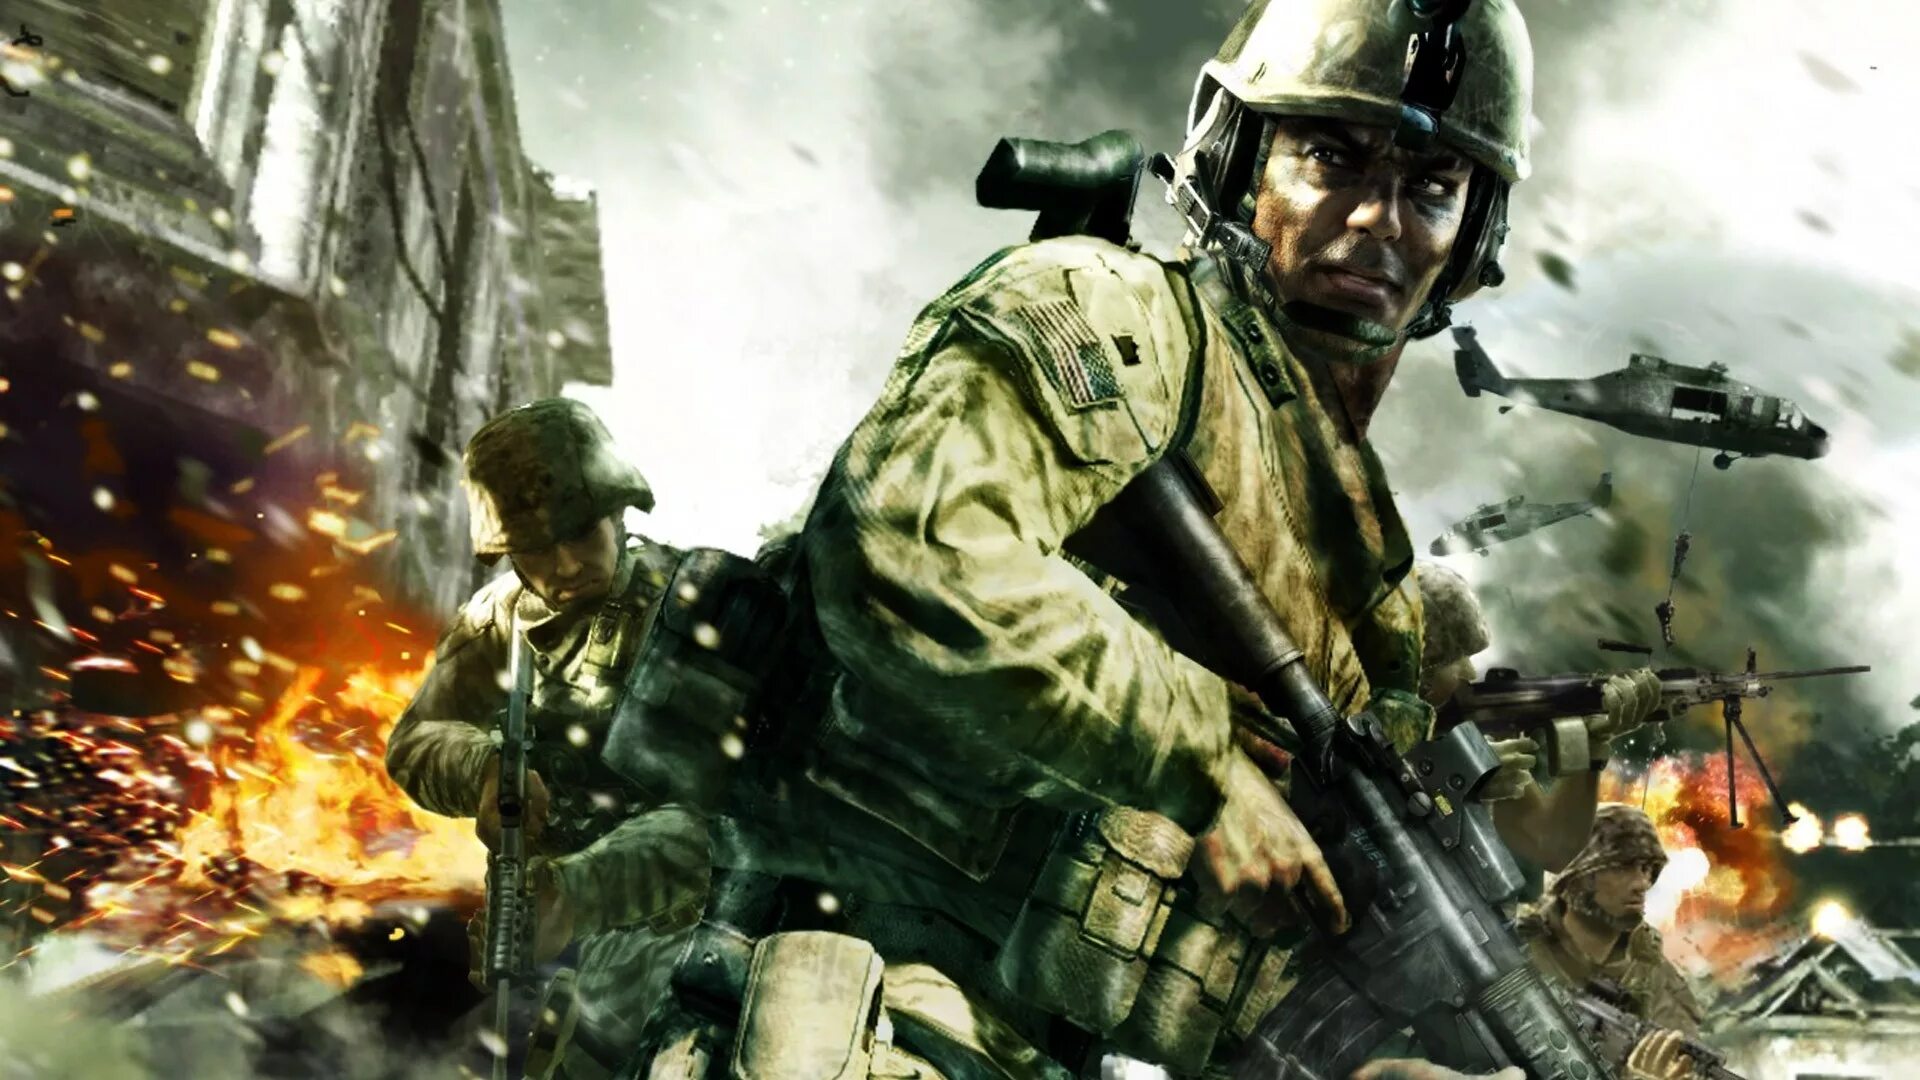 Call of Duty 4 Modern Warfare. СФД ща вген ьщвук цфкафку 4. Call of Duty - часть 4 - Modern Warfare. Кал оф дьюти Modern Warfare. Калл оф дути модерн варфайр